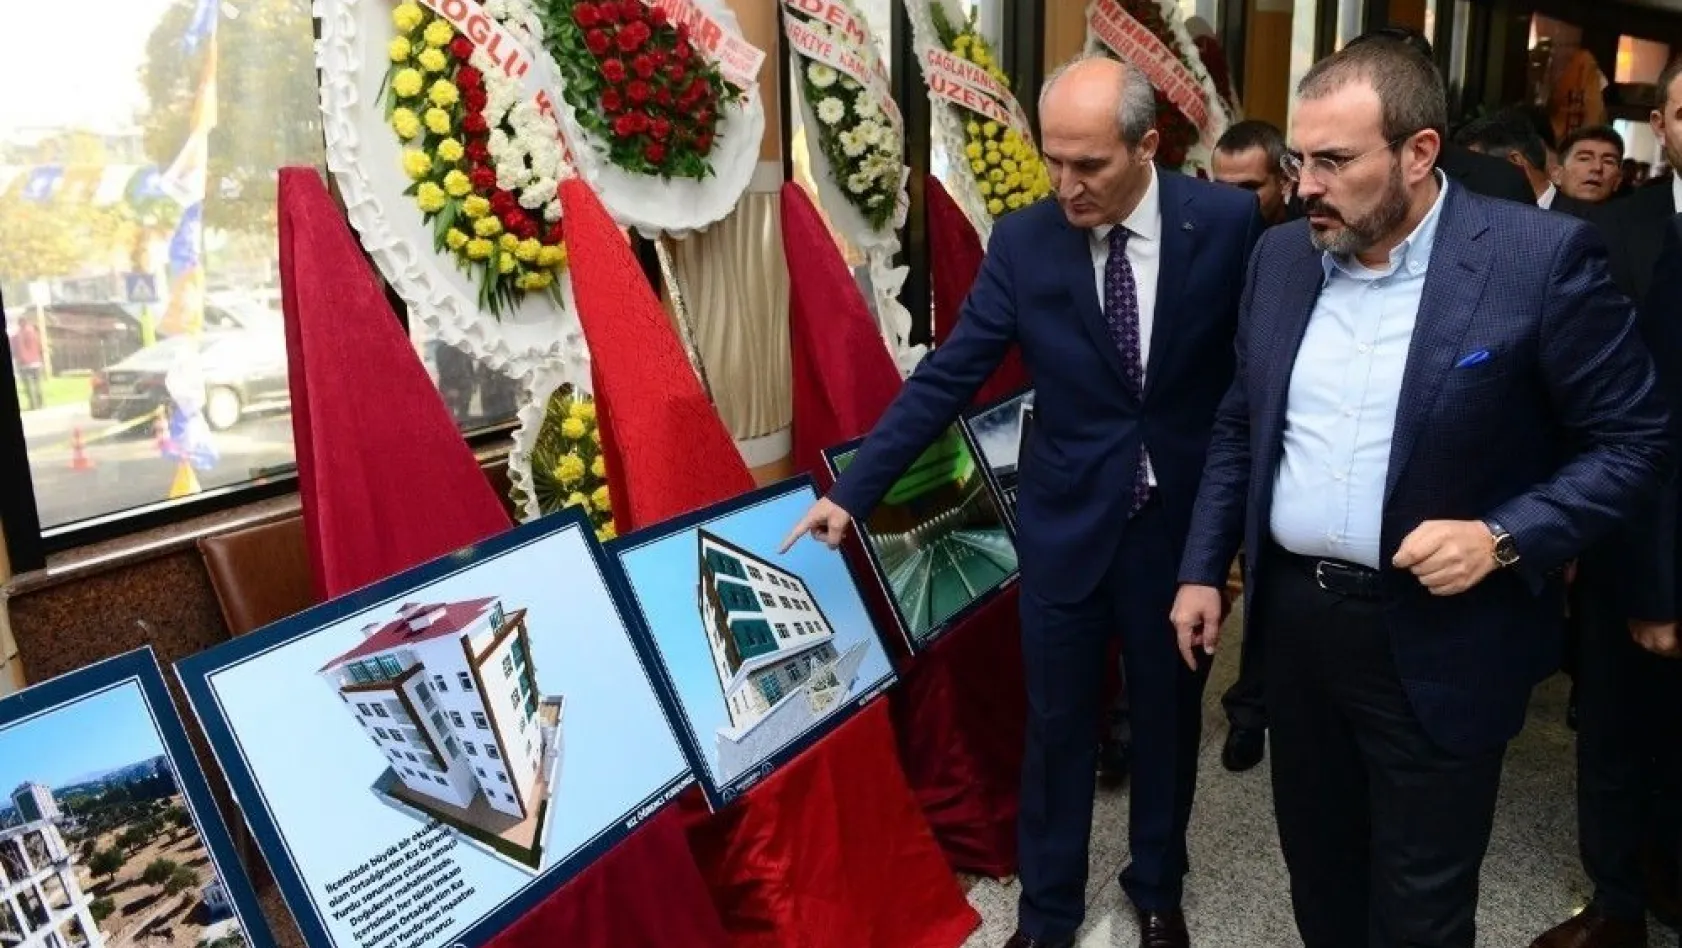 Dulkadiroğlu Belediyesi'nden 'Hizmette 3 Yıl' fotoğraf sergisi
